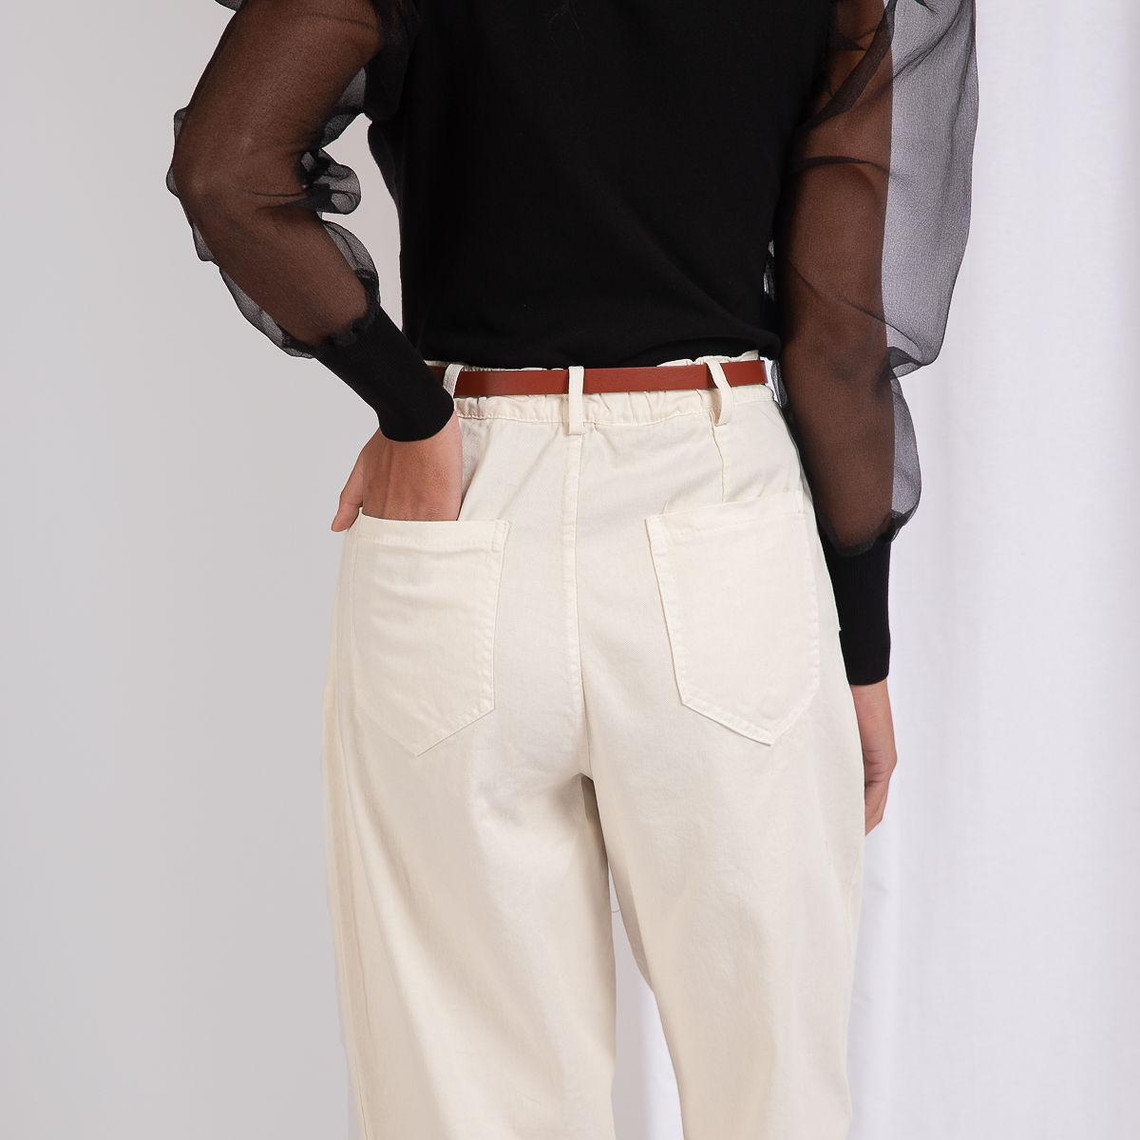 Pantalon chino élastique pour femme référence 3008 avec ceinture JOPHY & CO 